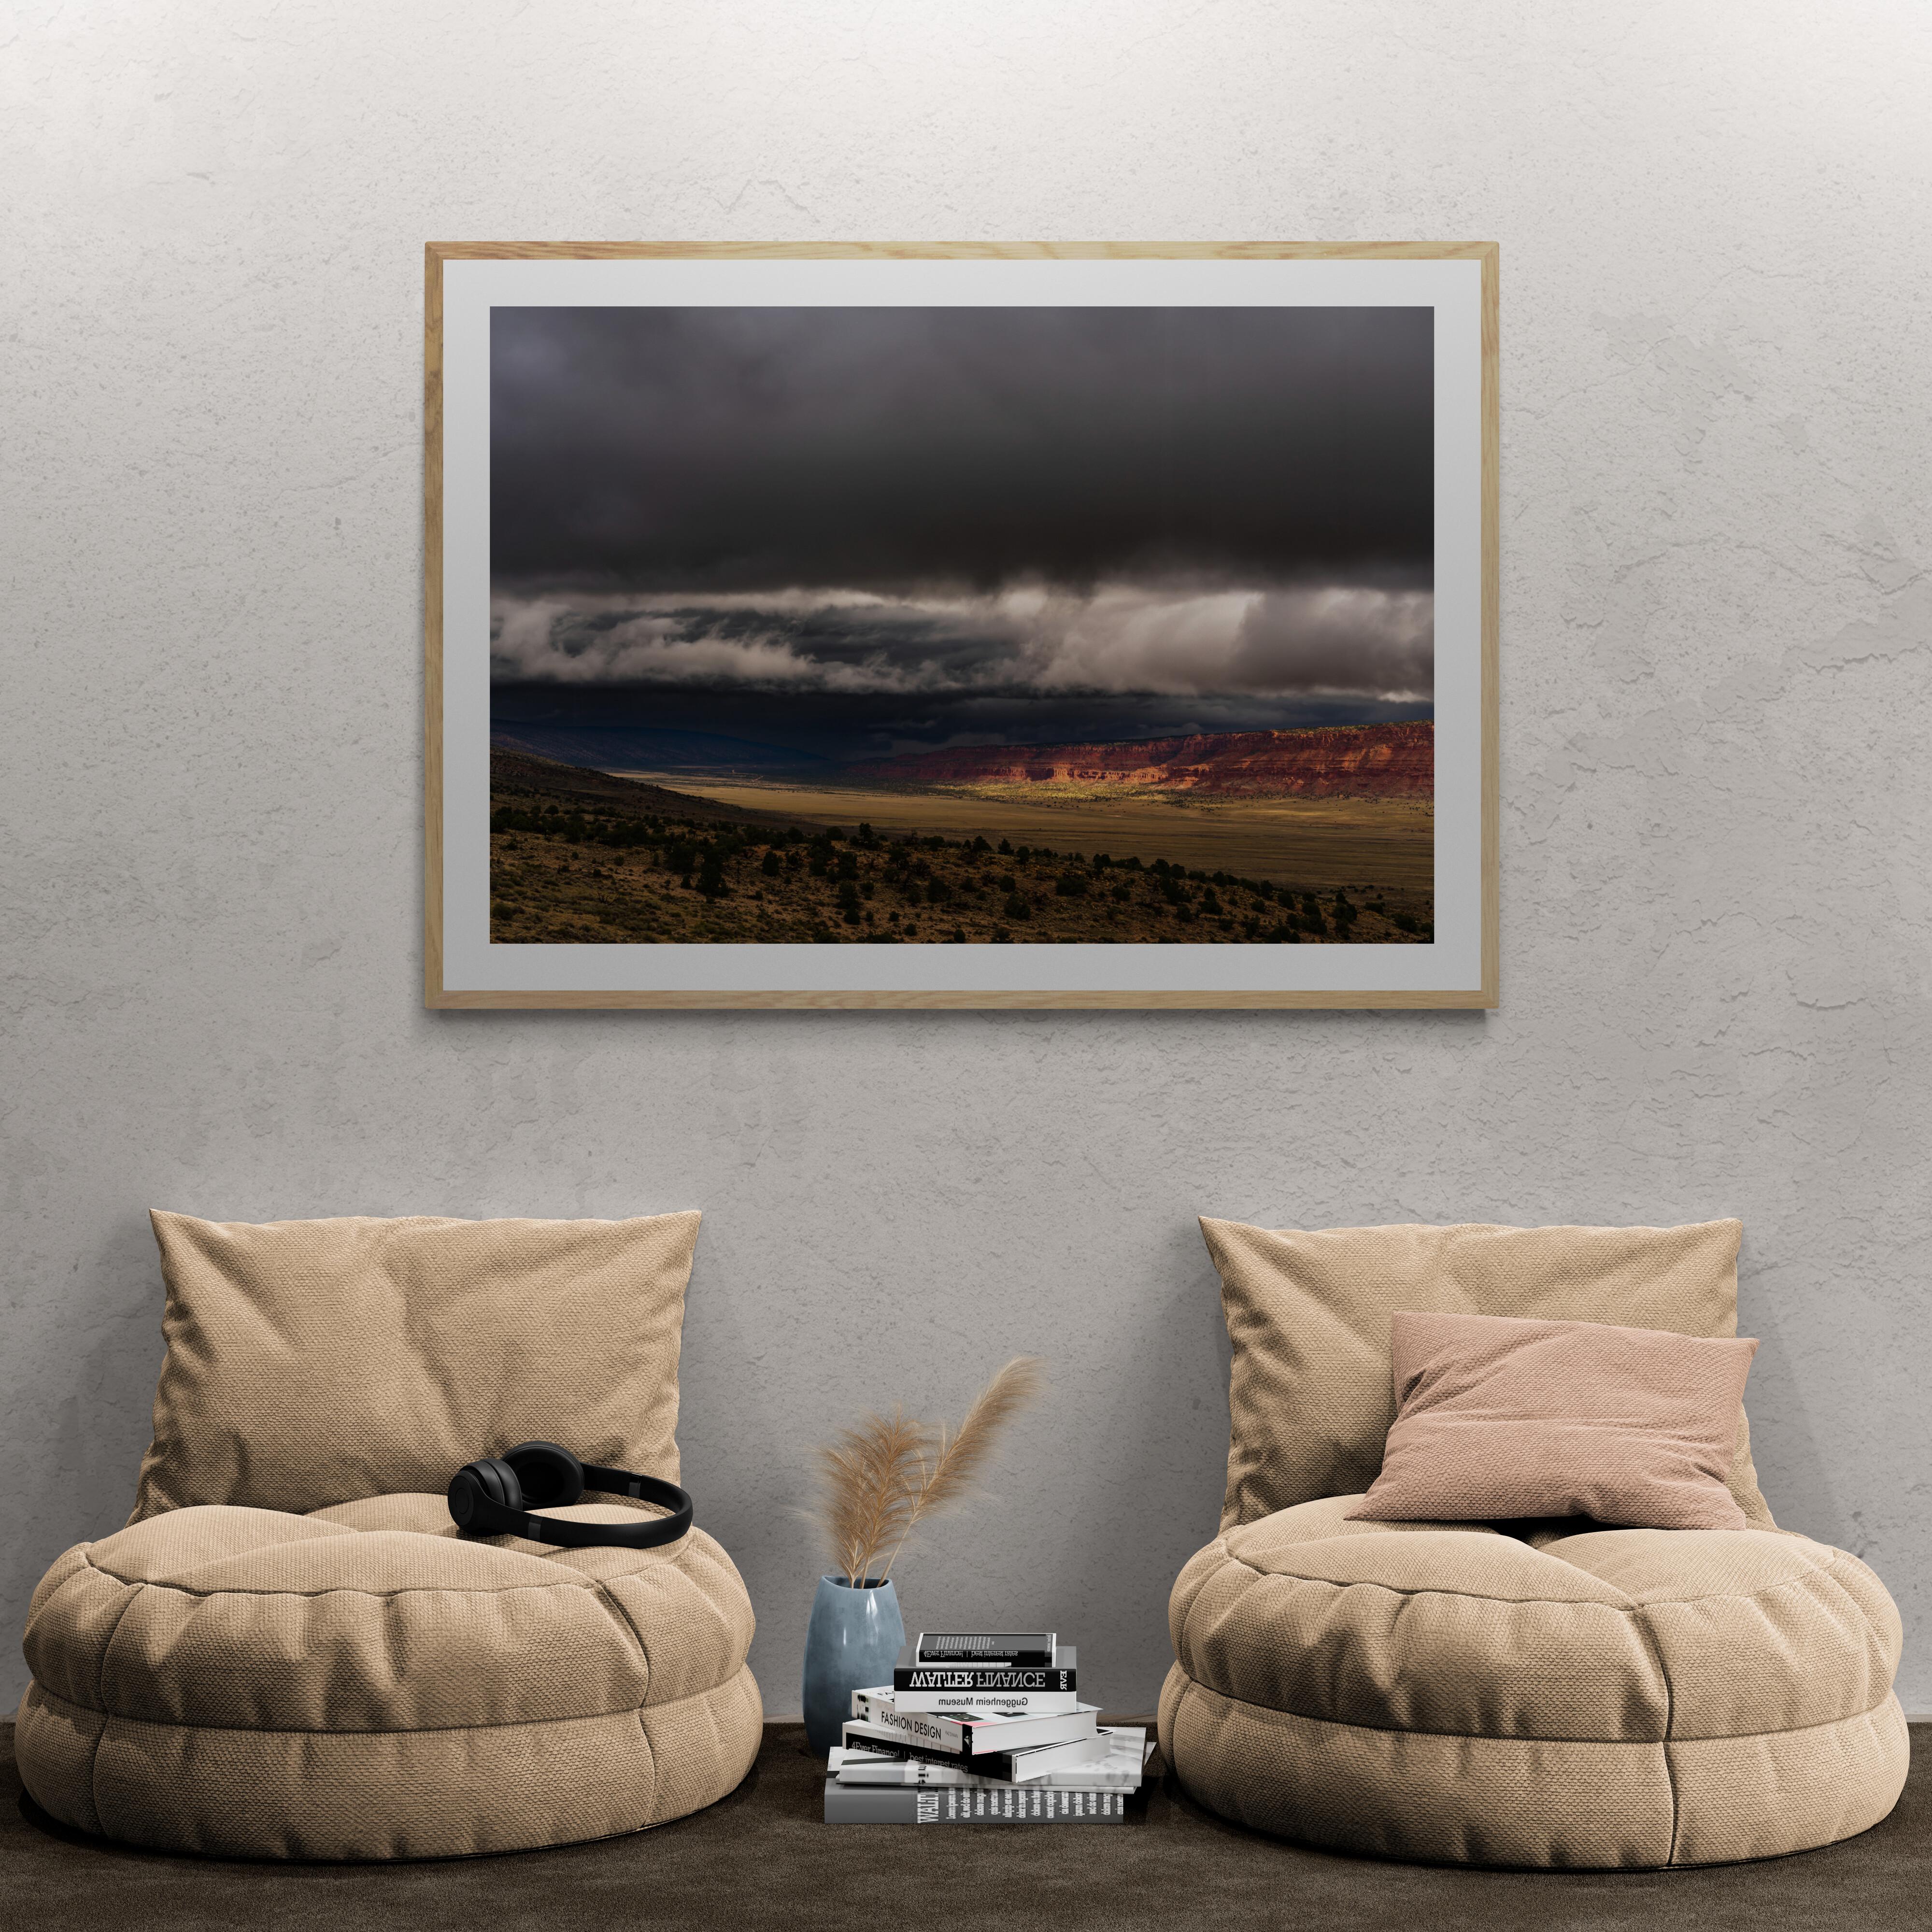  Farbfotografie in limitierter Auflage - Red Cliffs, Utah 2018. Aufgenommen auf einer ausgedehnten fotografischen Reise durch den Westen im Jahr 2018. Das Foto stammt aus dem Red Cliffs National Park in Utah.

Über Howard Lewis:
In seiner